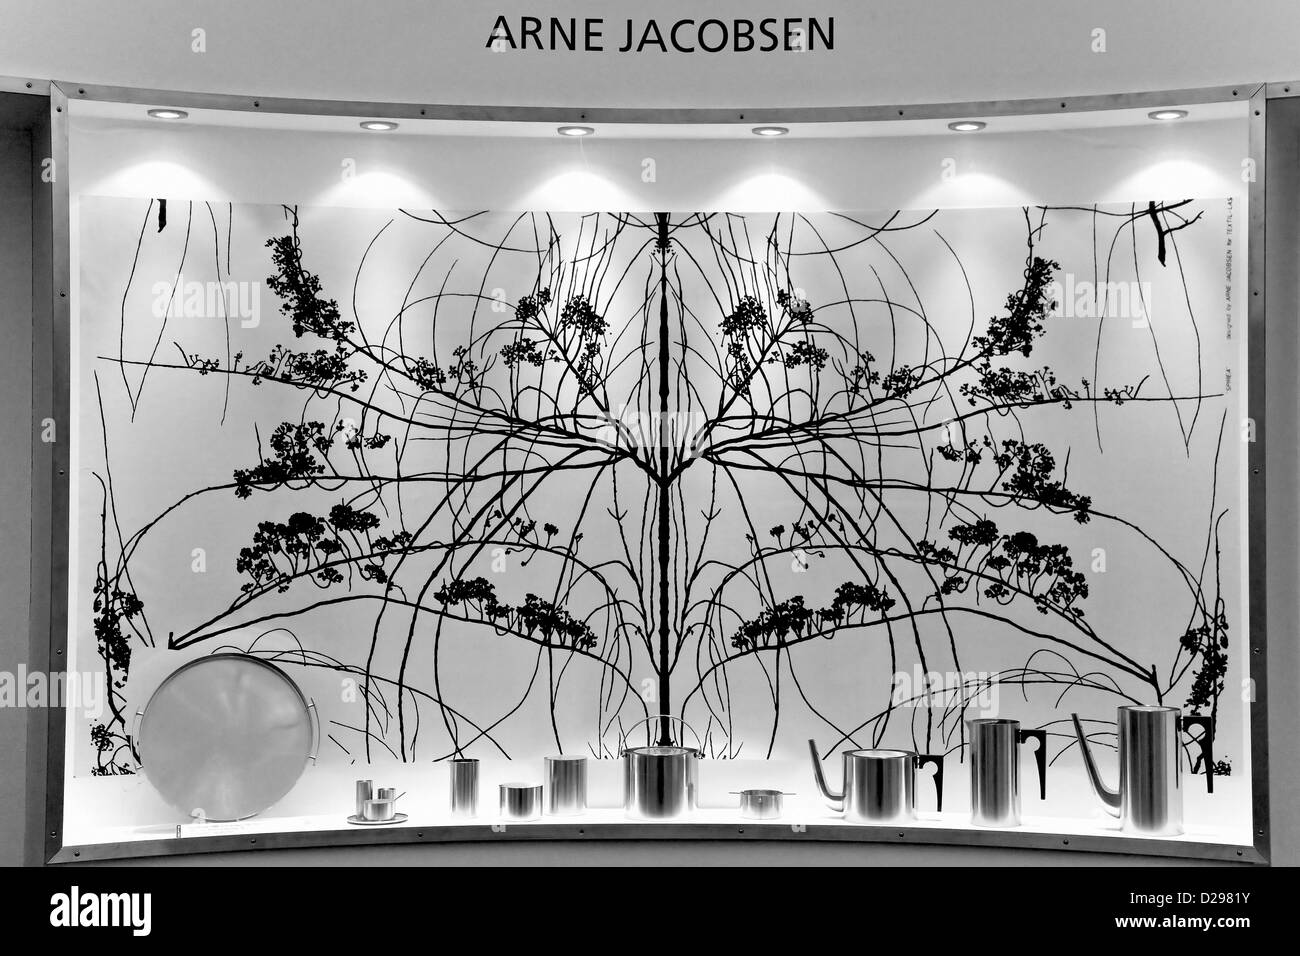 Arne Jacobsens display di acciaio inox Foto Stock